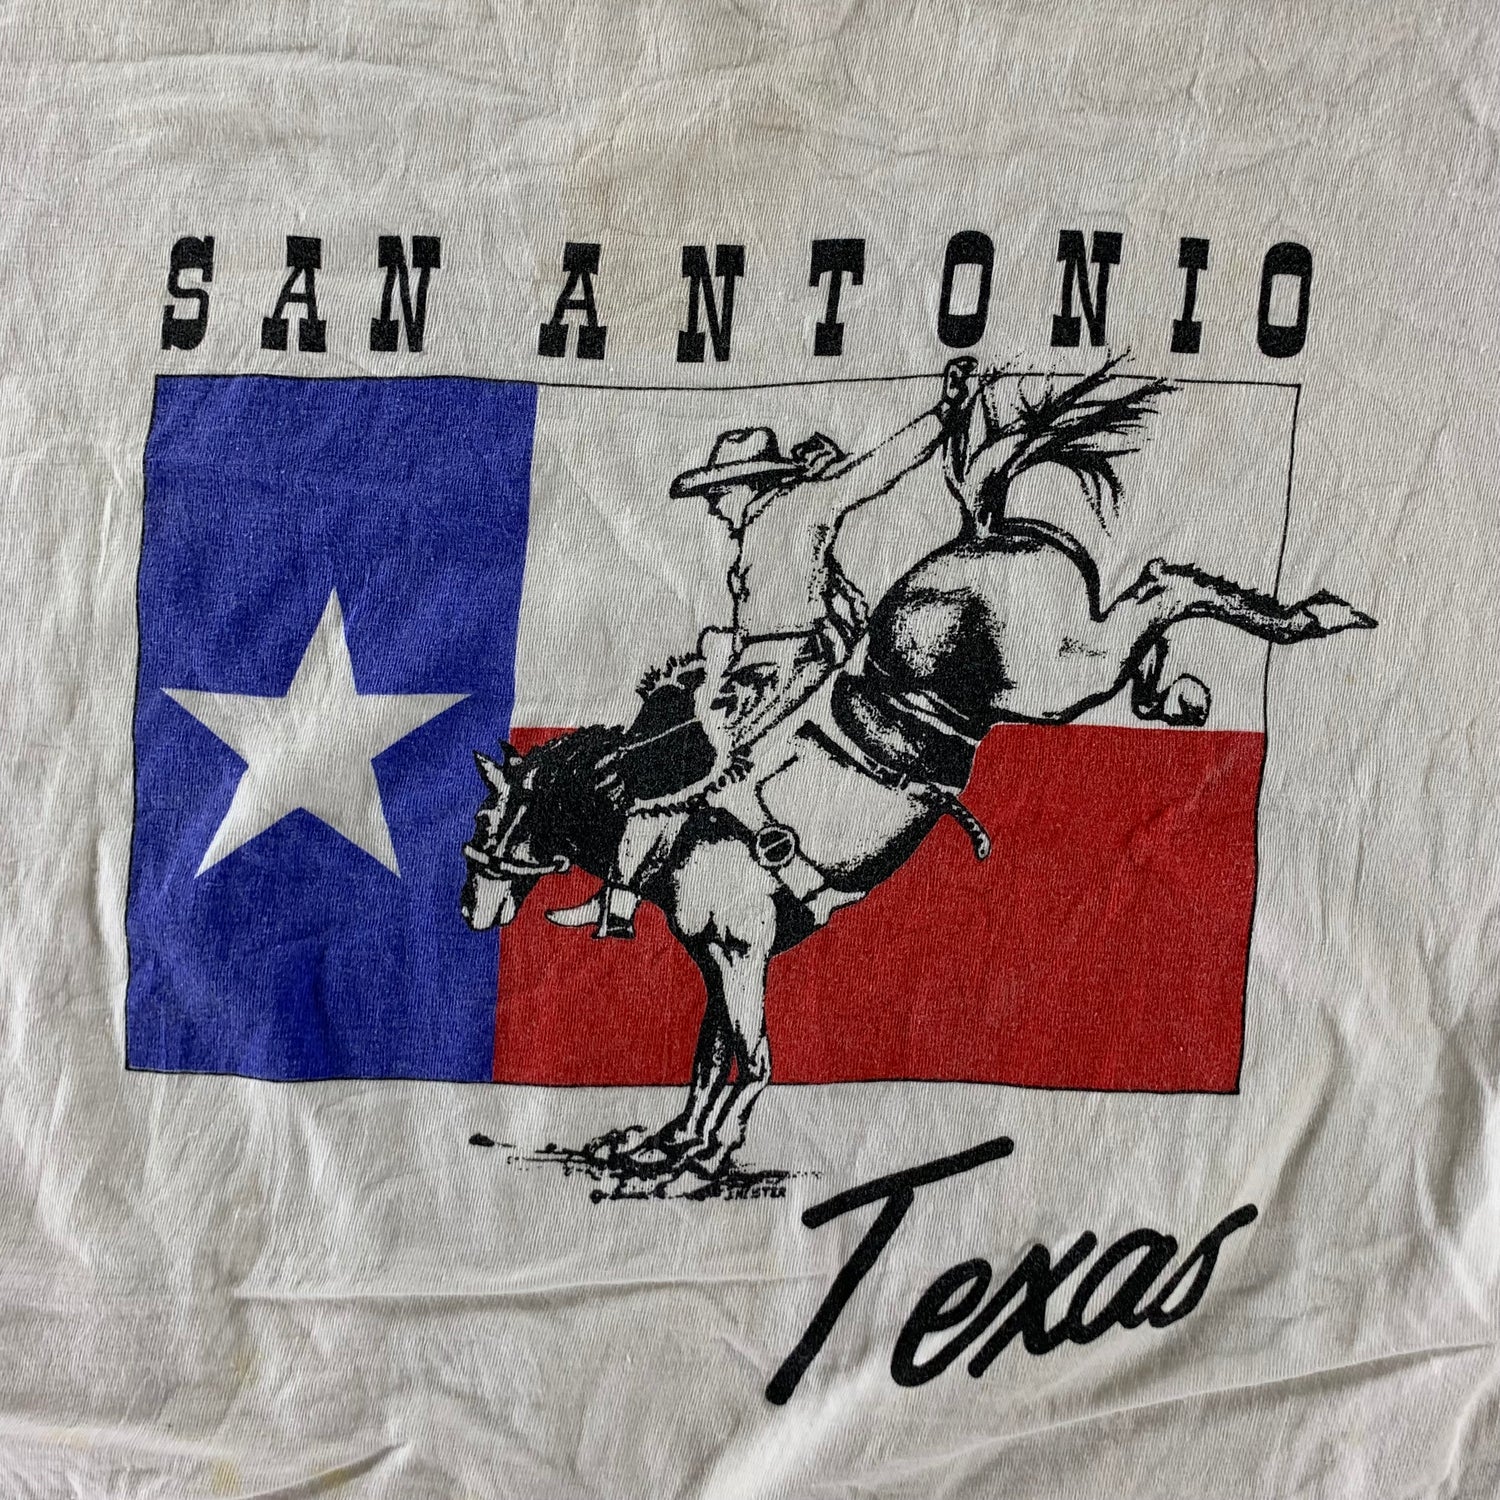 Vintage 1990s San Antonio Texas T-shirt size XL